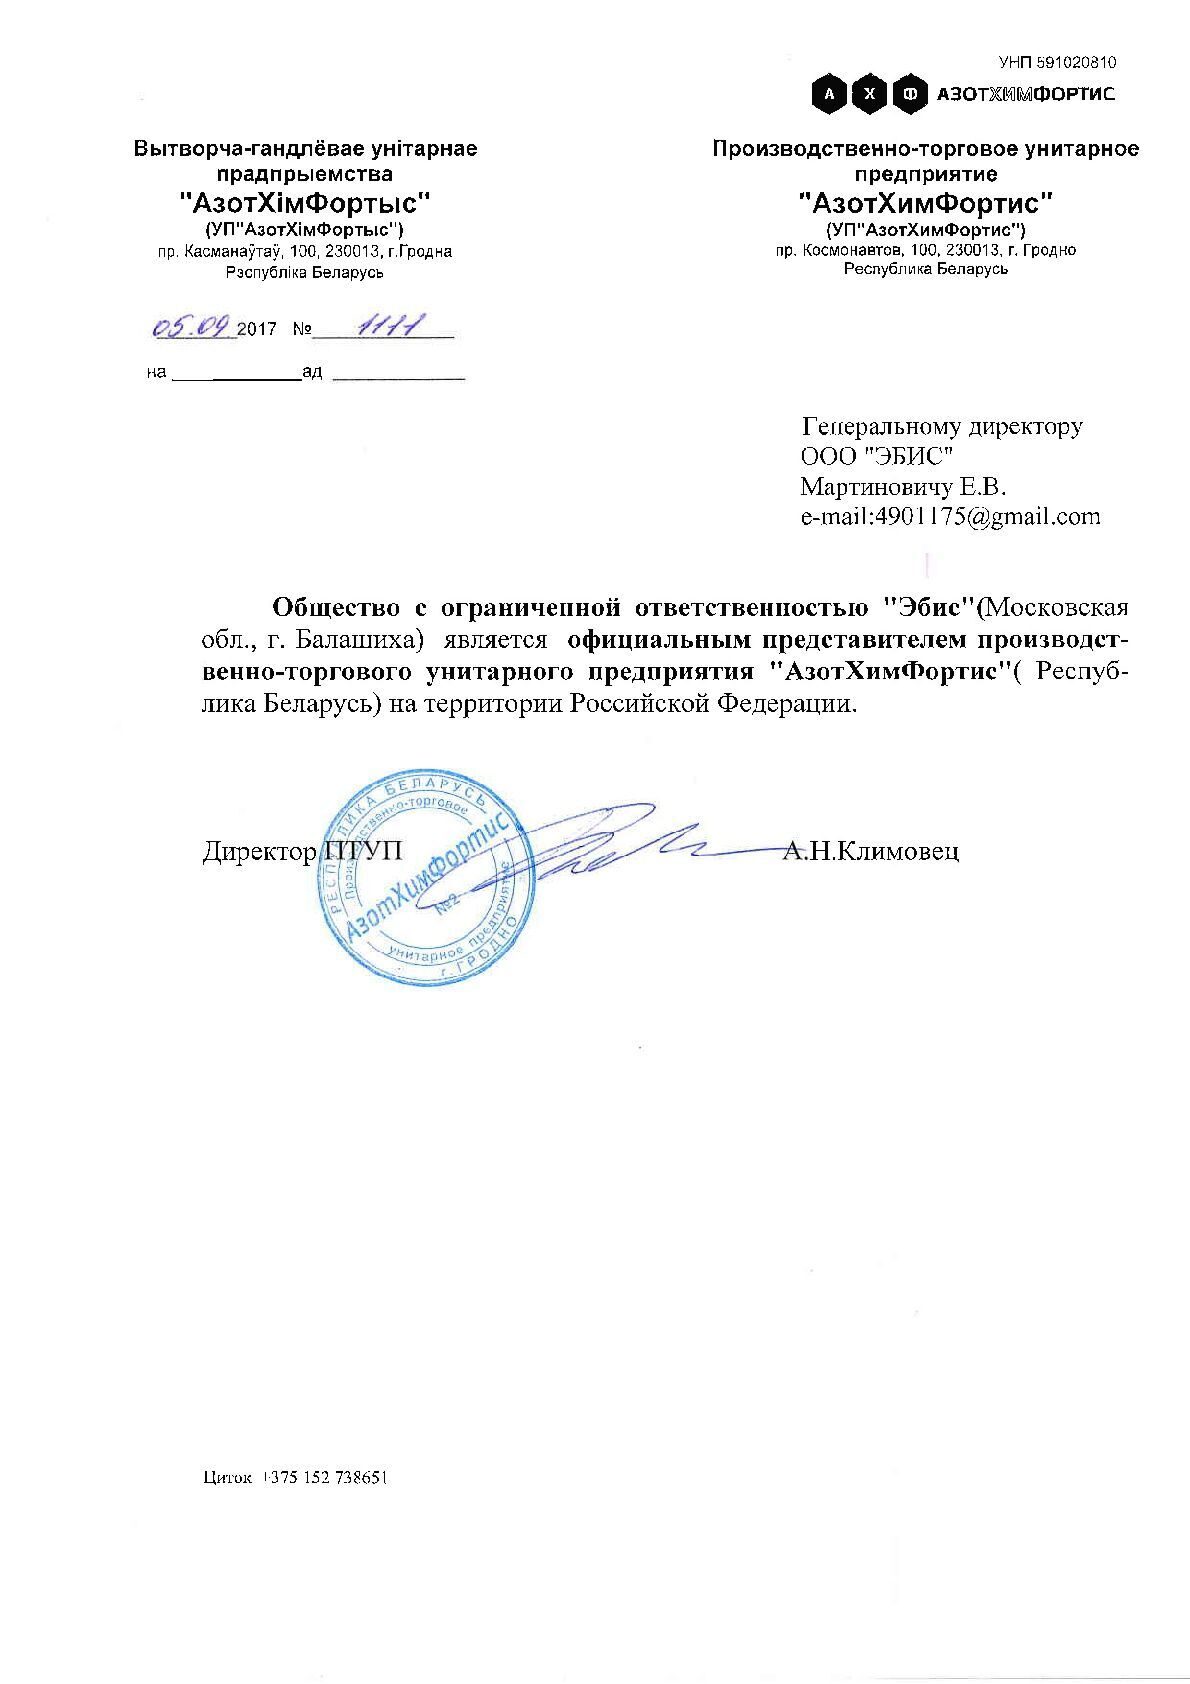 Письмо о представительстве в РФ от АзотХимФортис